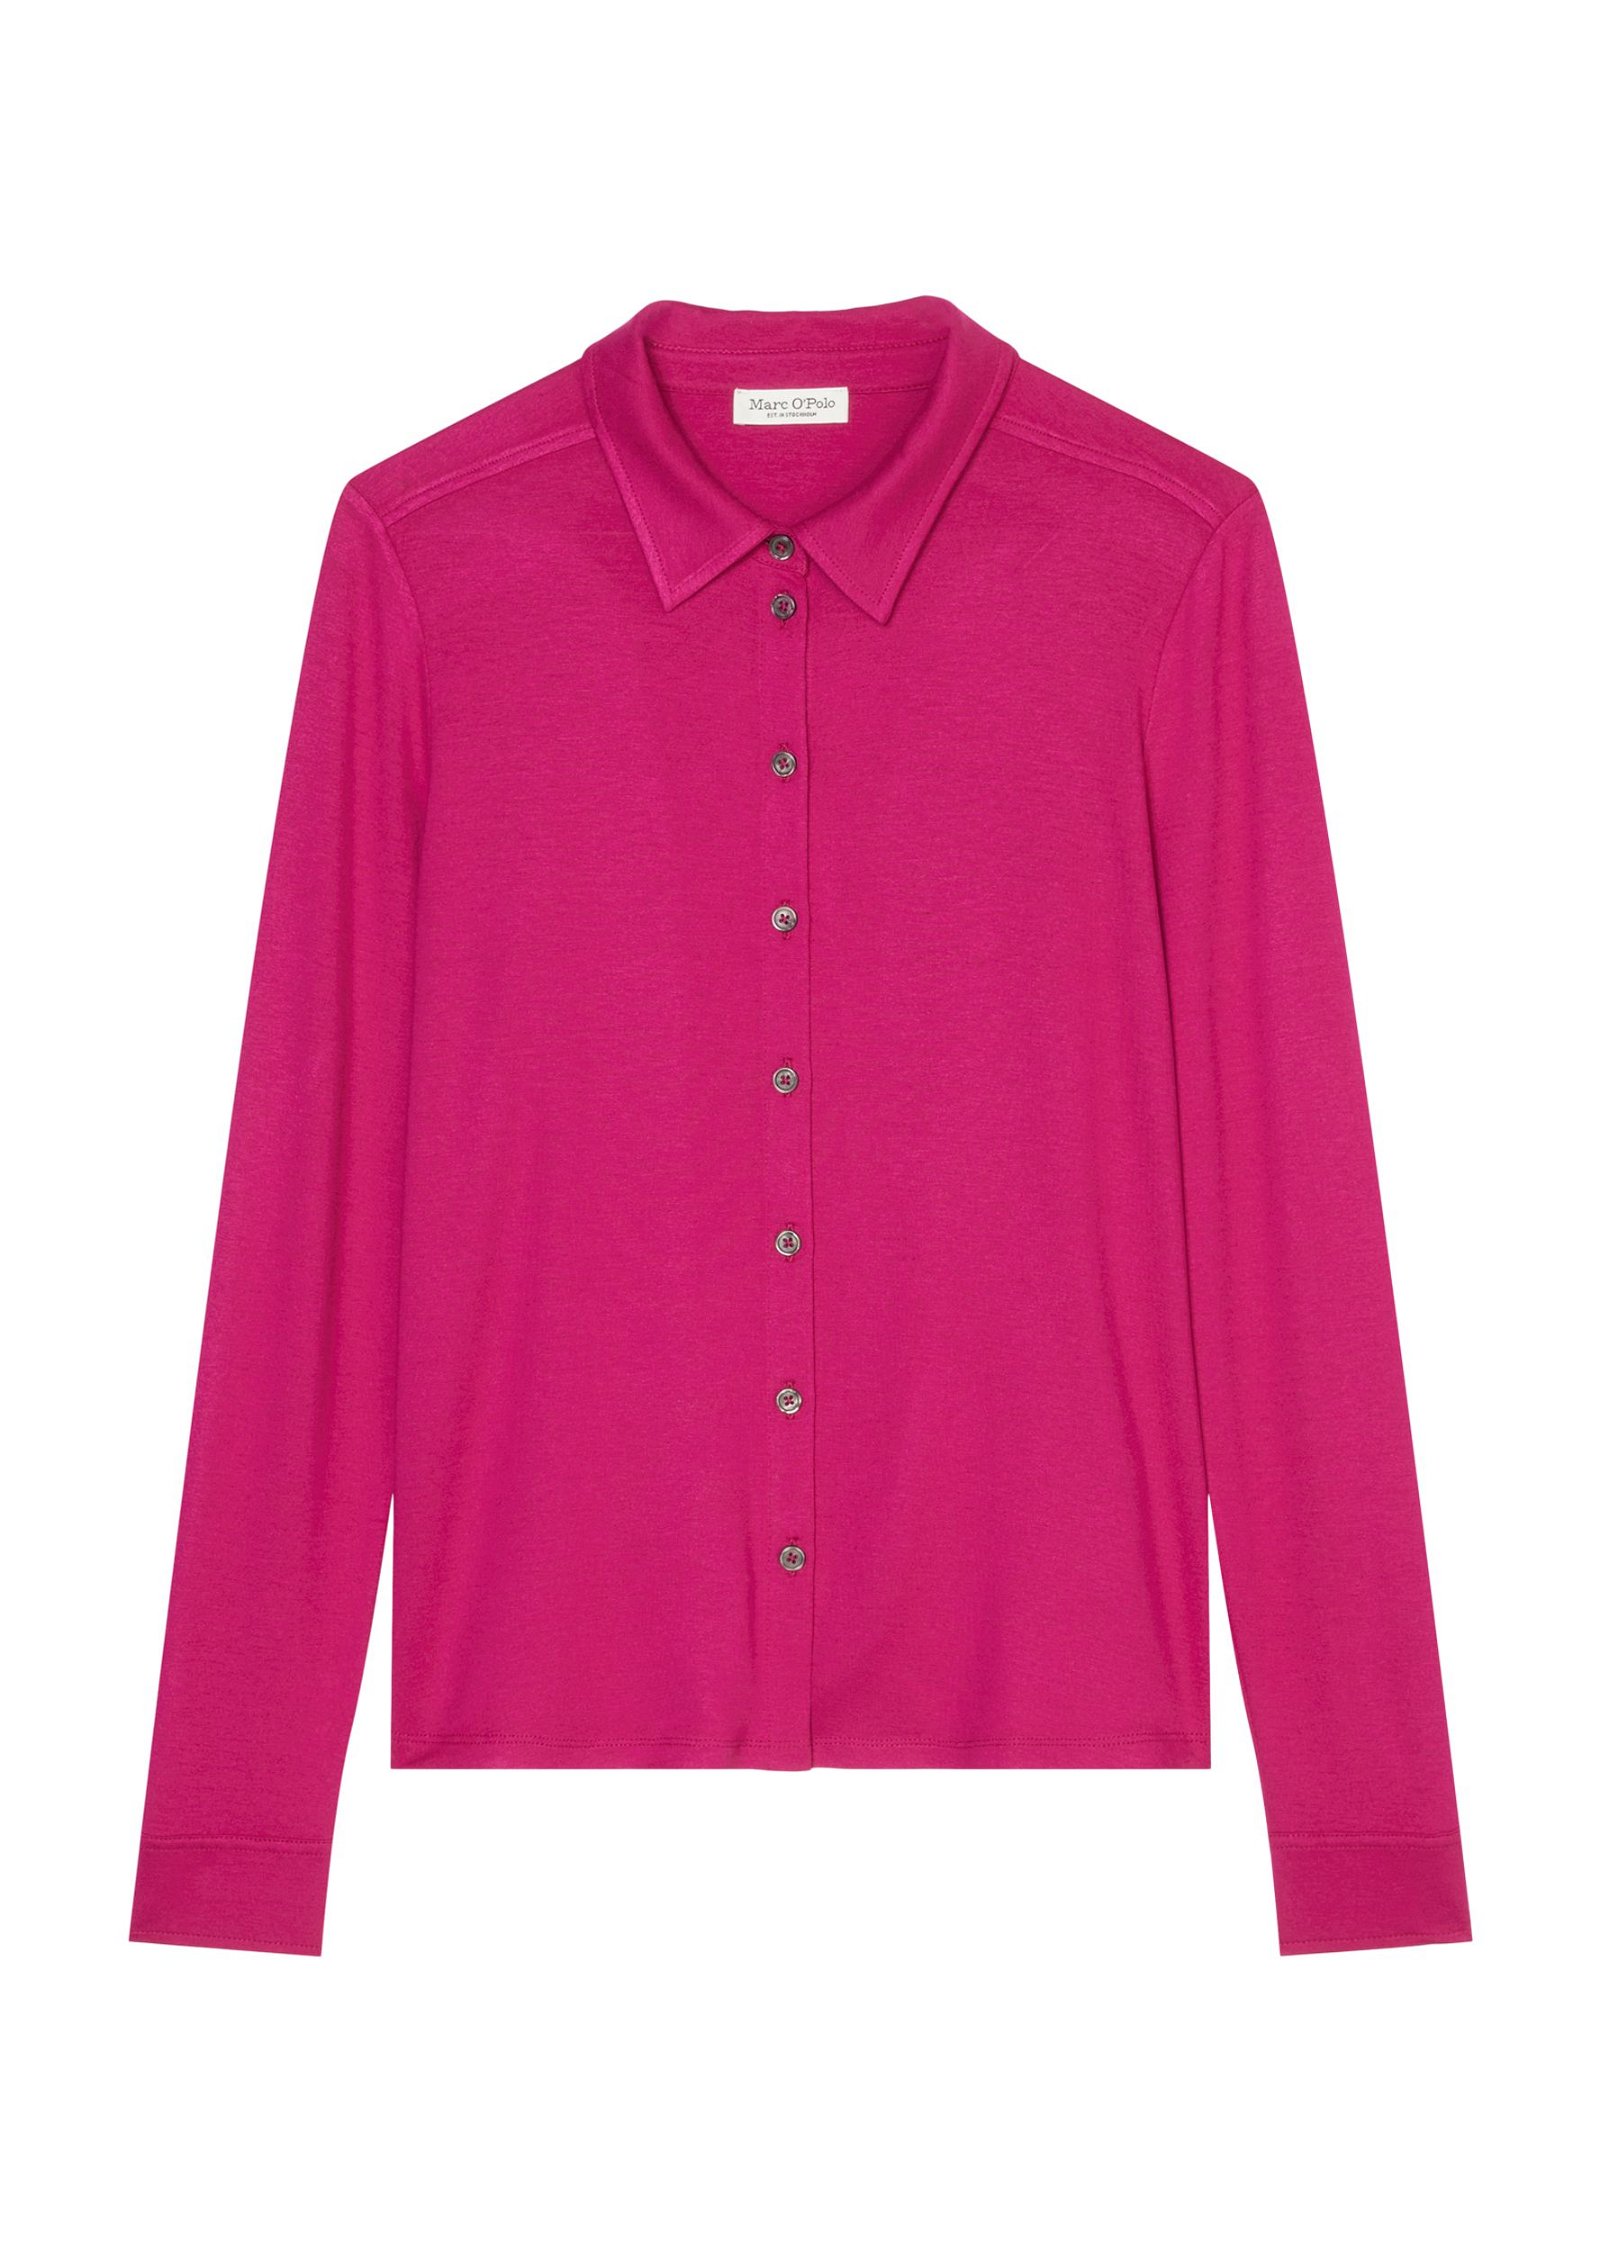 Damen Bluse aus Jersey-Stoff mit langen Ärmeln in pink